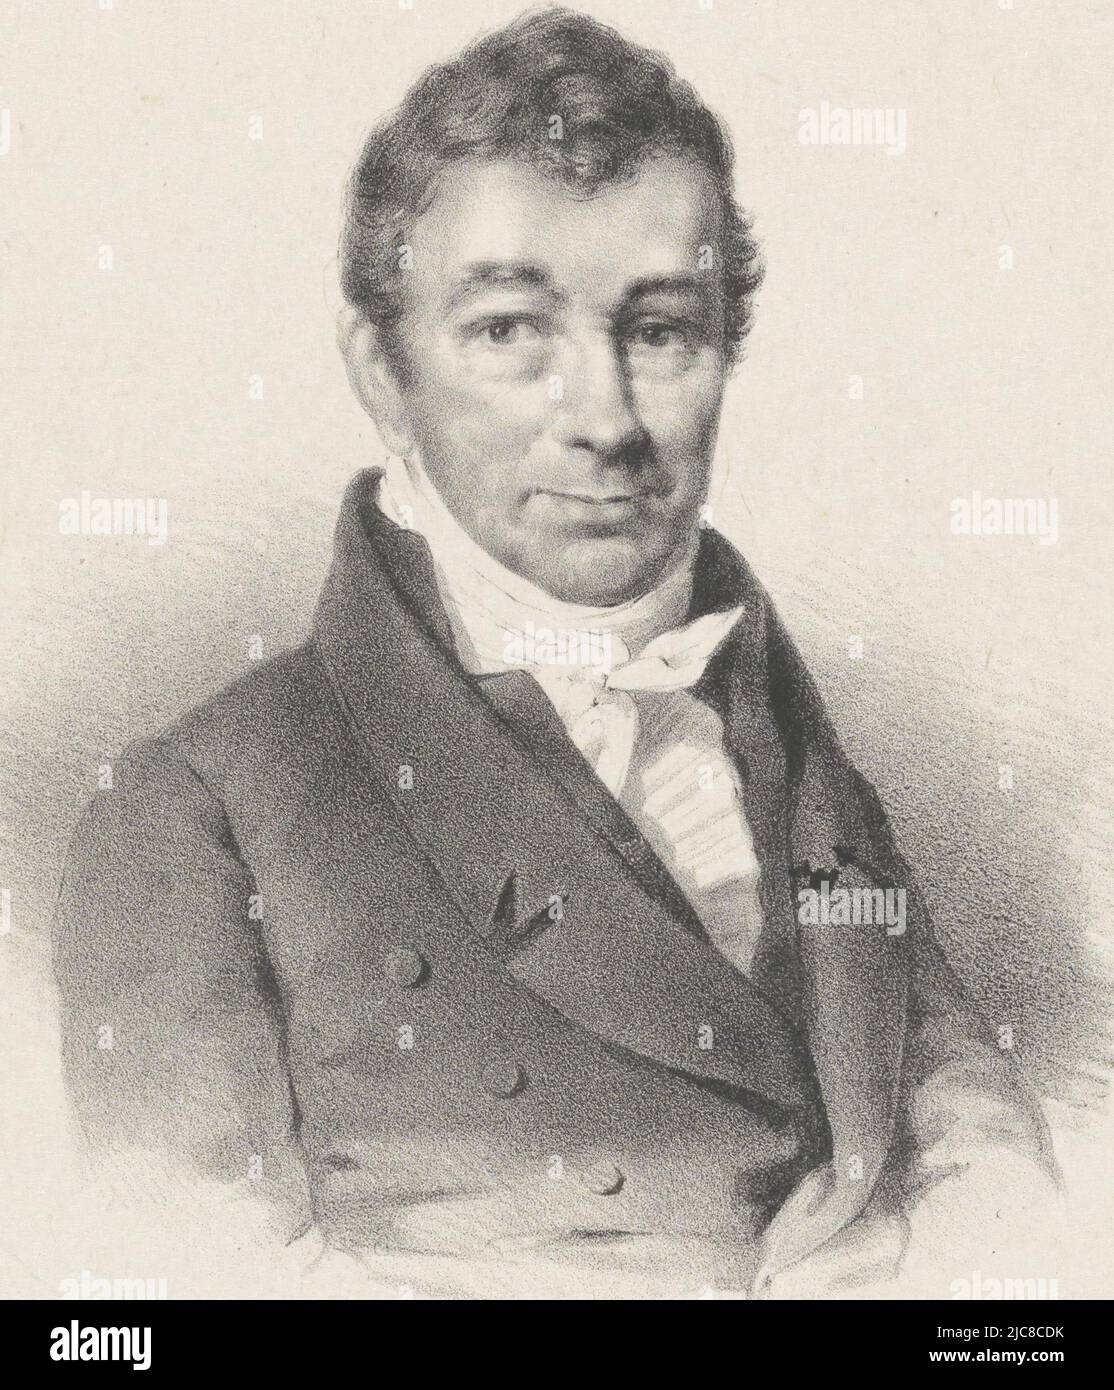 Portrait d'Antoni Christiaan Wynand staring van den Wildenborch., imprimeur: Hilmar Johannes Backer, Dordrecht, 1822 - 1845, papier, h 315 mm - l 258 mm, h 275 mm - l 201 mm Banque D'Images